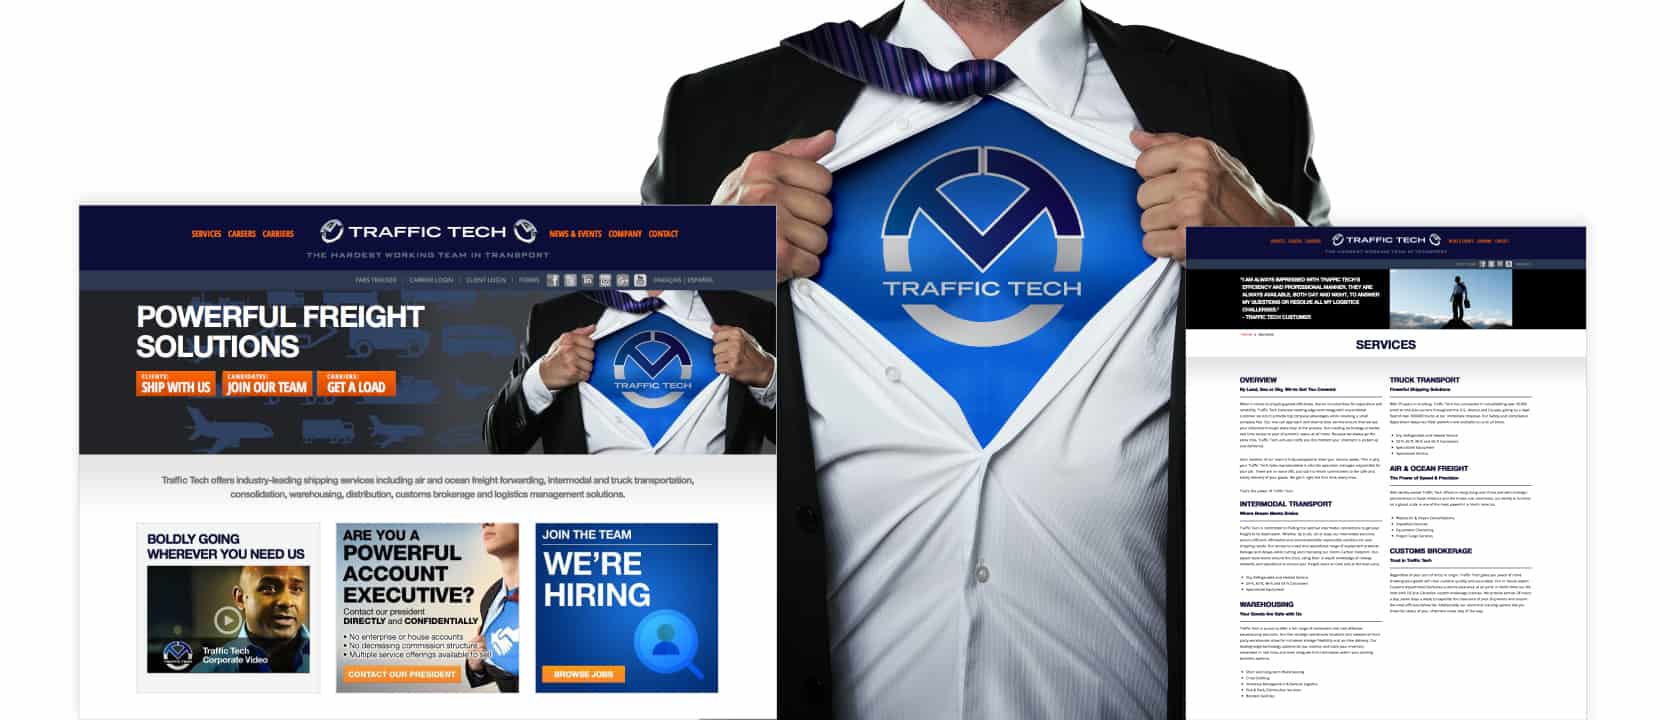 Captures d'écran de la page d'accueil et de la page des services de Traffic Tech, montrant un homme ouvrant sa chemise et révélant un logo Traffic Tech